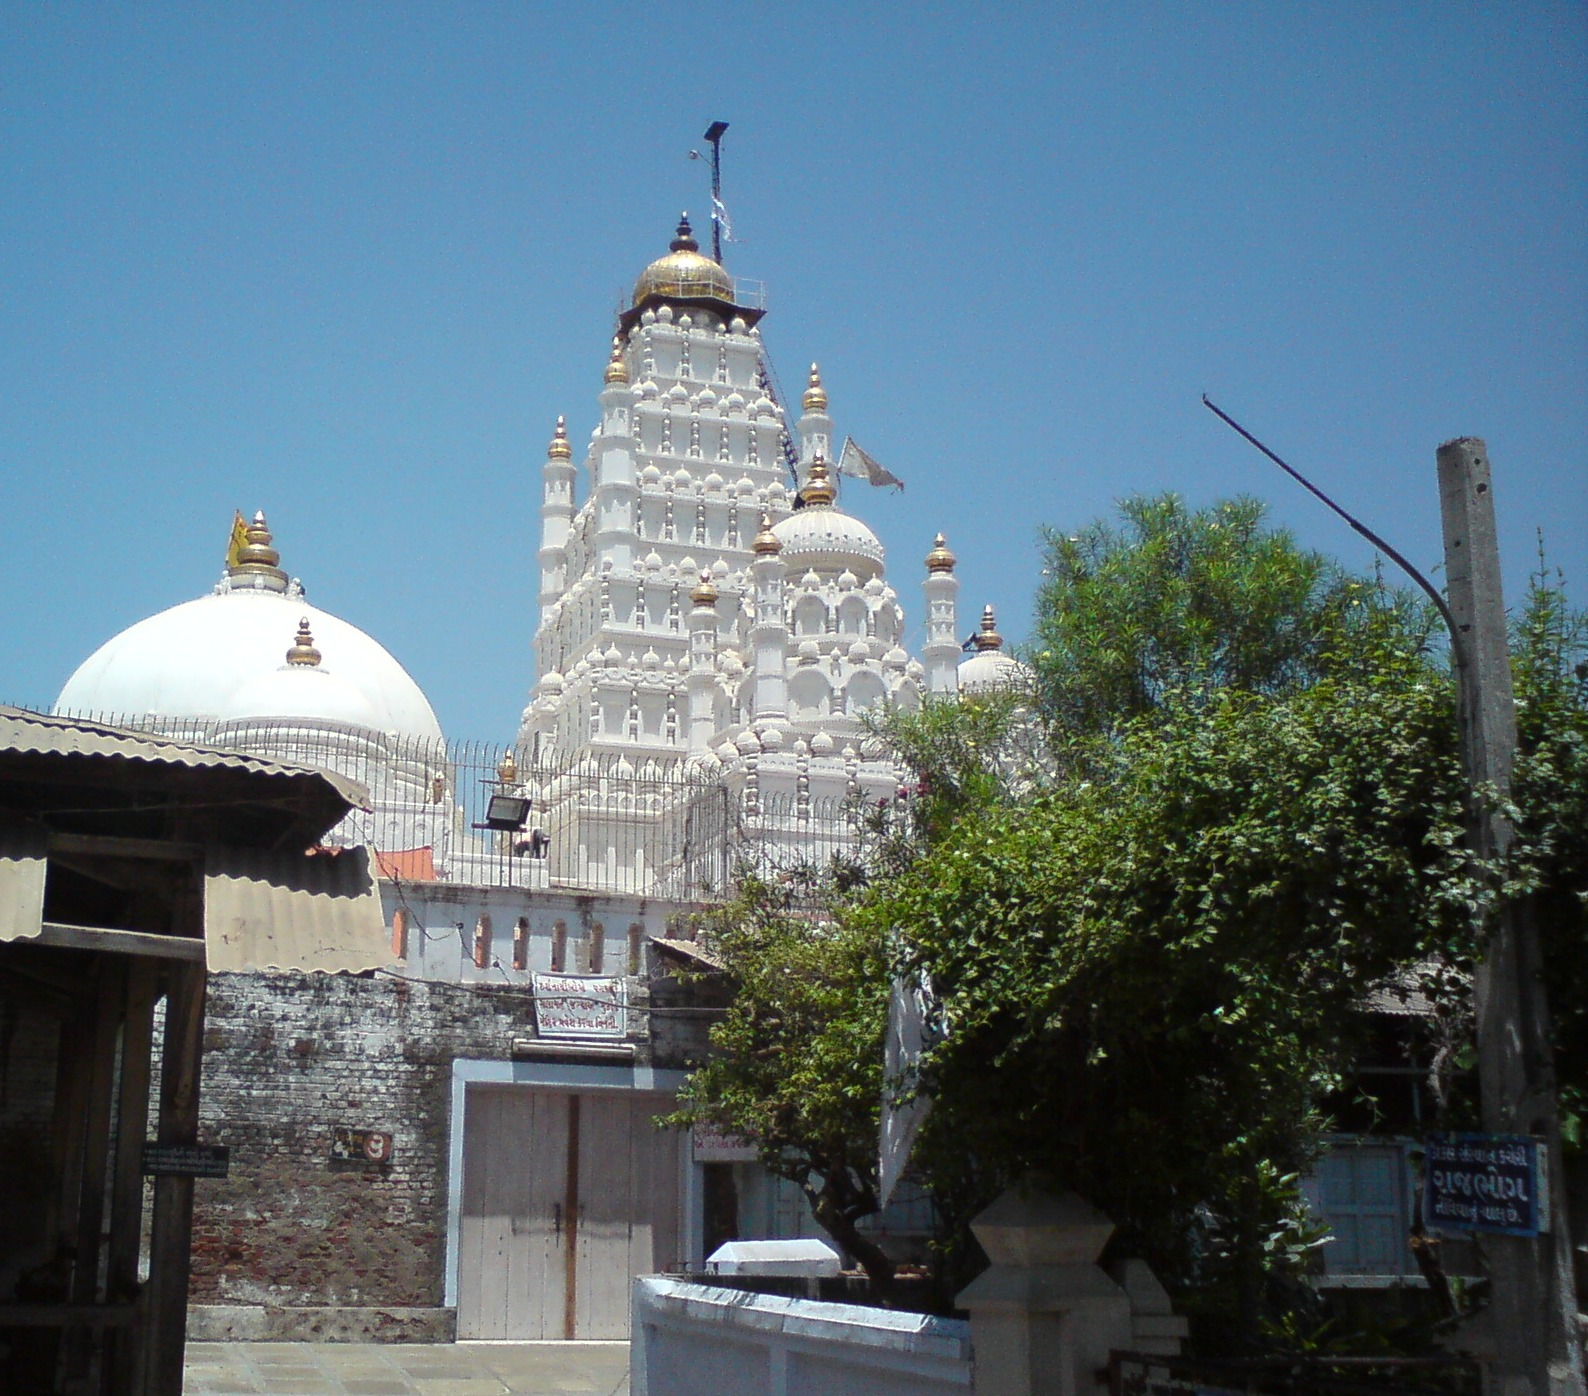 http://4.bp.blogspot.com/-8bK1lga6LMI/Ta_c7v7QvRI/AAAAAAAAAQ4/mOsCp-PqGjI/s1600/the-famous-hindu-temple-of-gujarat-at-dakor-wallpapers.JPG